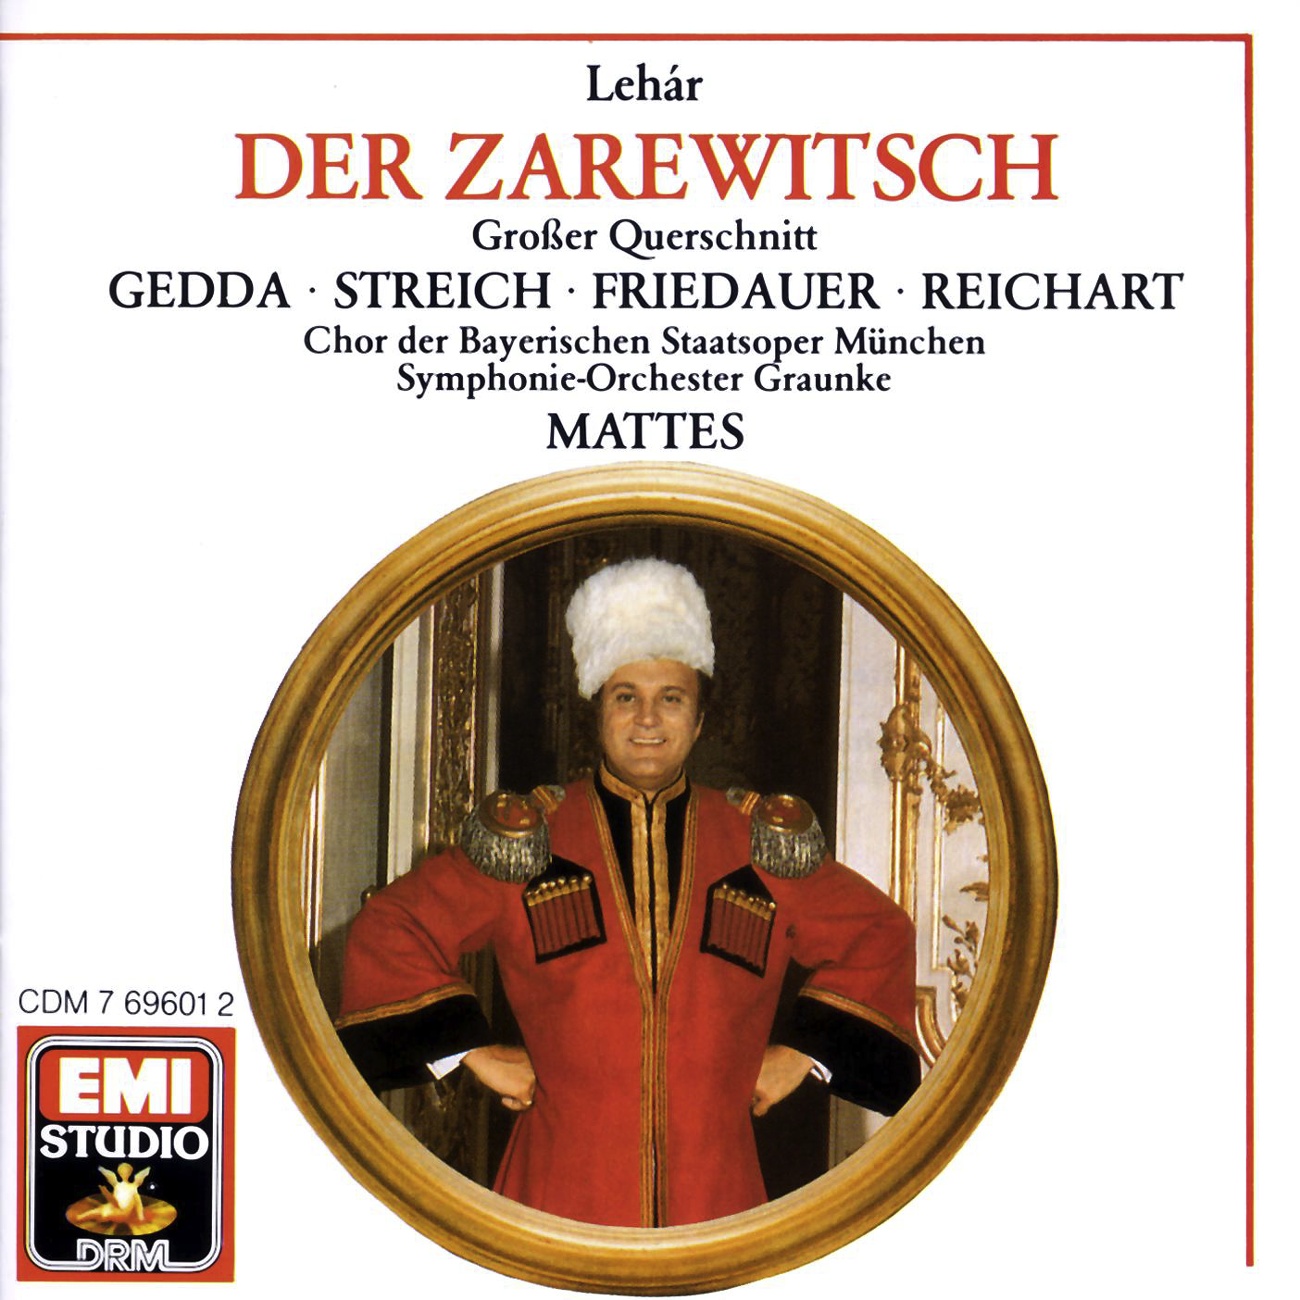 Der Zarewitsch  Highlights 1988 Digital Remaster, Erster Akt: Introduktion  Es steht ein Soldat am Wolgastrand Chor